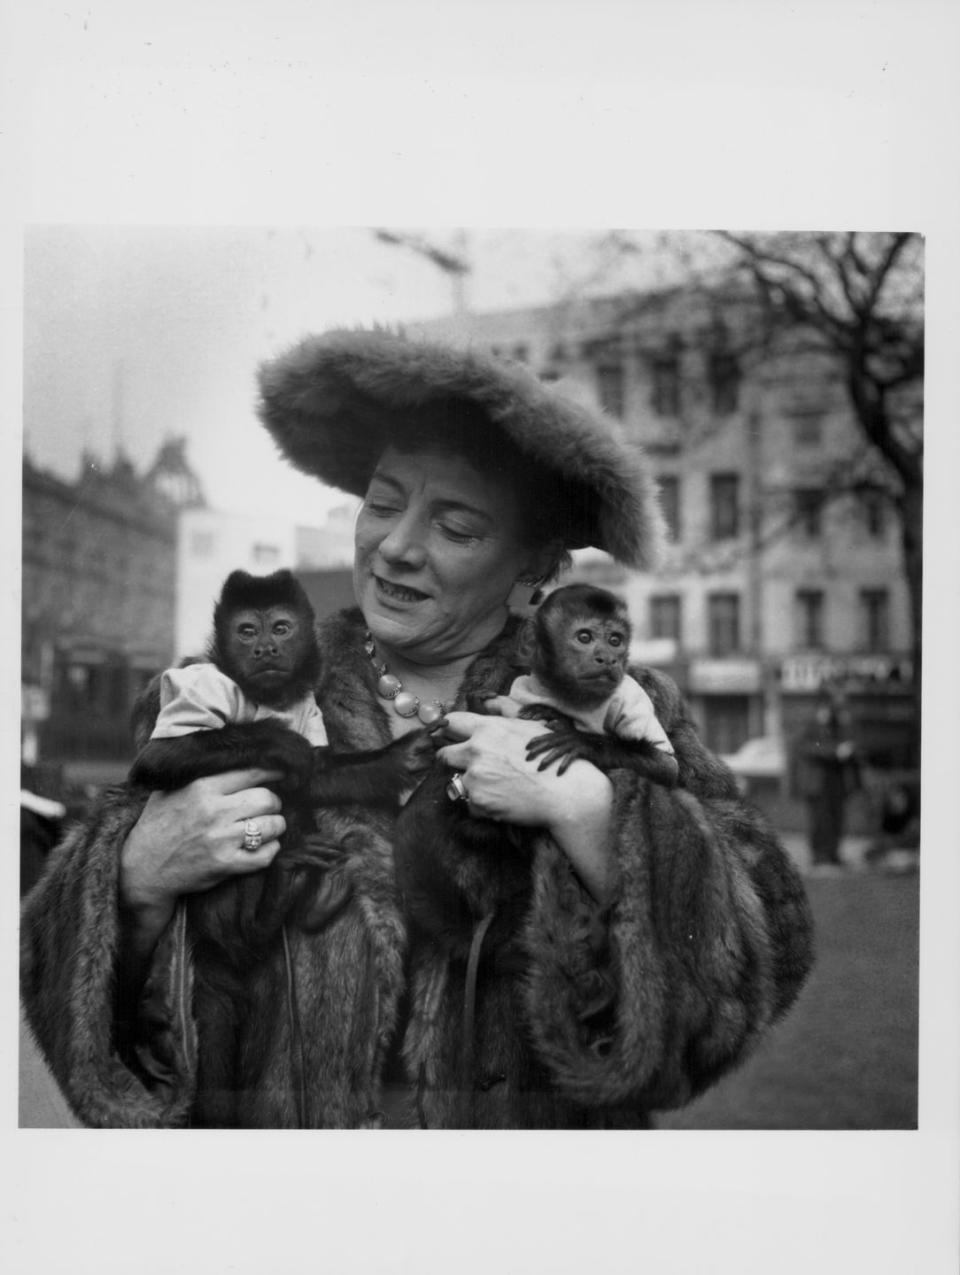 1956: Hylda Baker and Her Monkeys